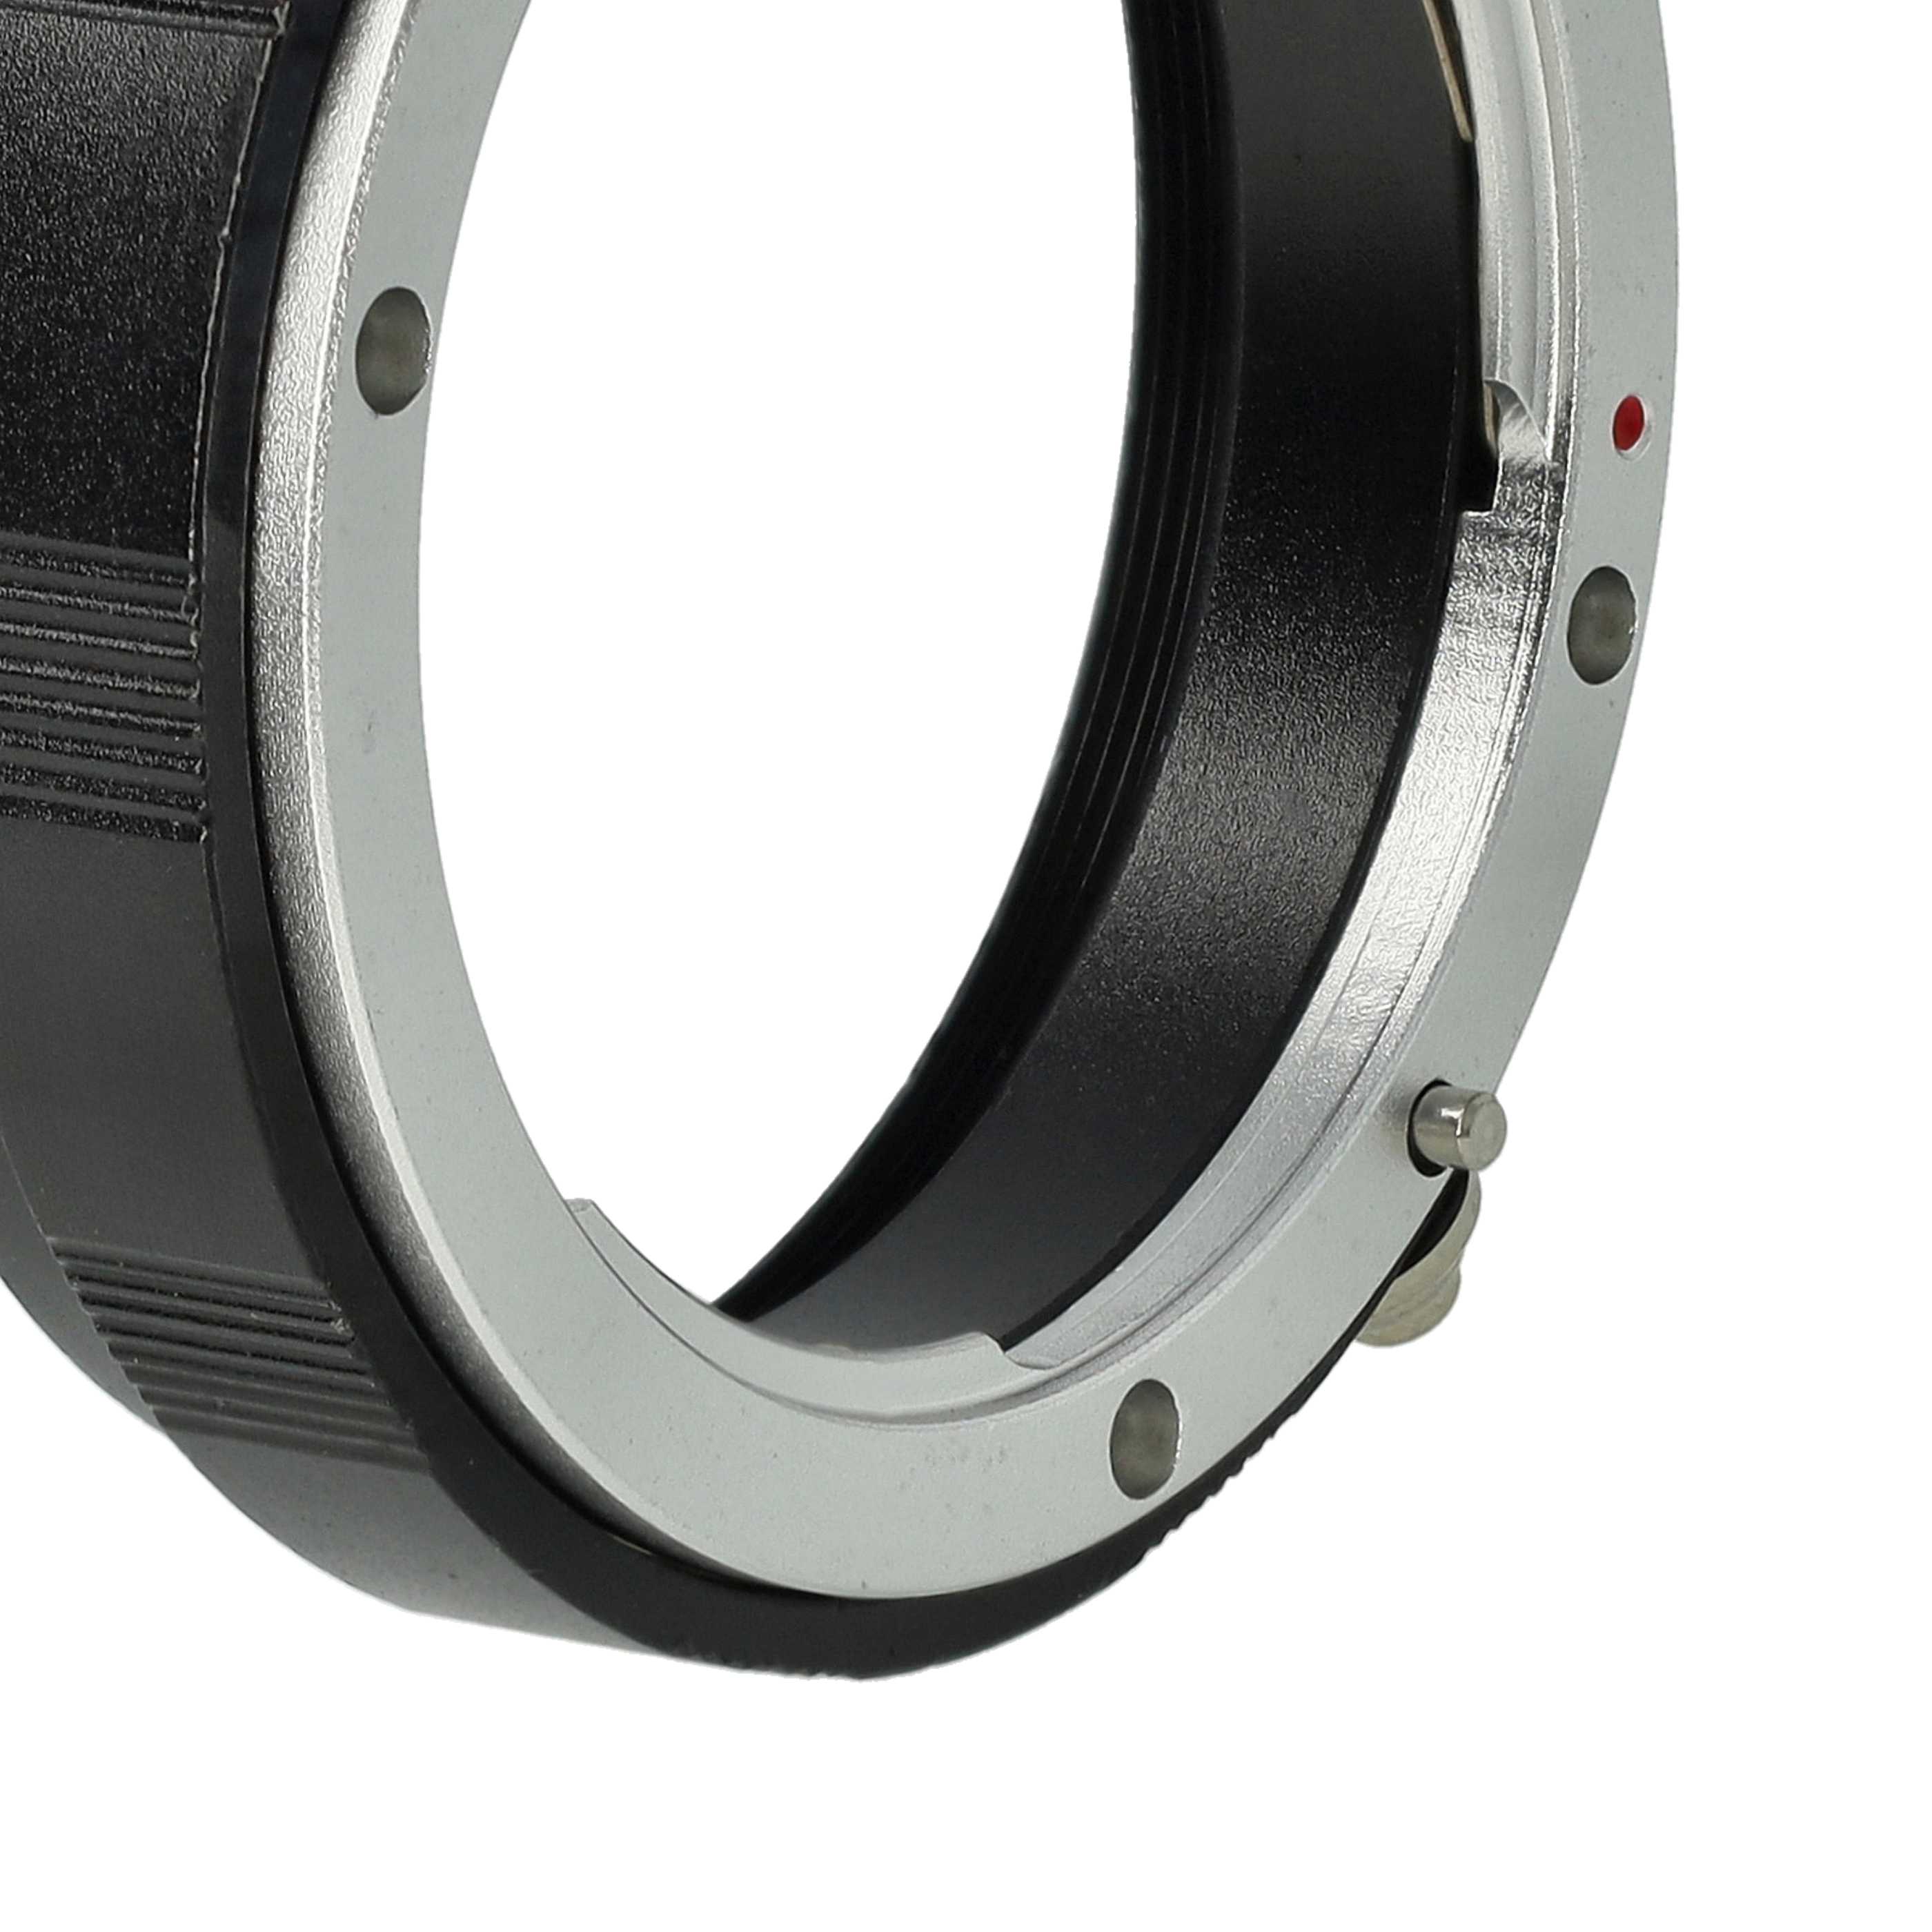 Anello di protezione per fotocamere e obiettivi da 58 mm Nikon D3000